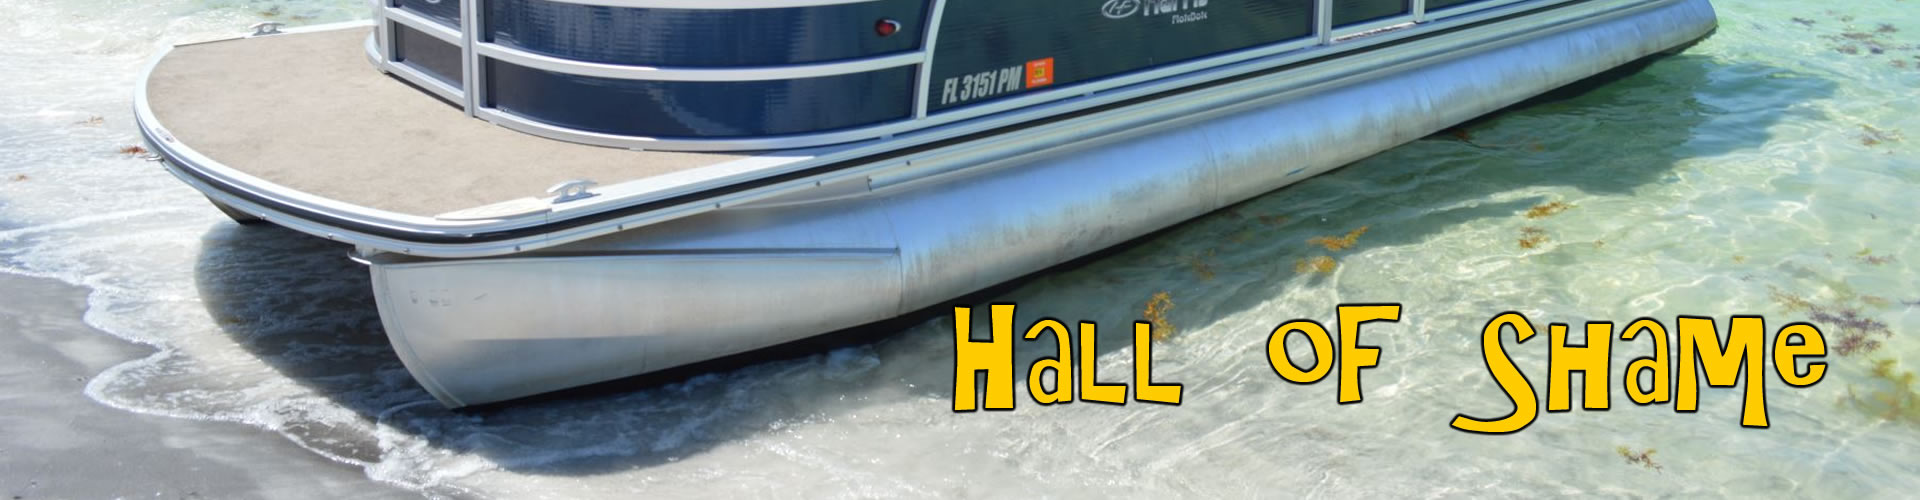 Pontoon Boat Hall of Shame, Tampa Bay, Fl